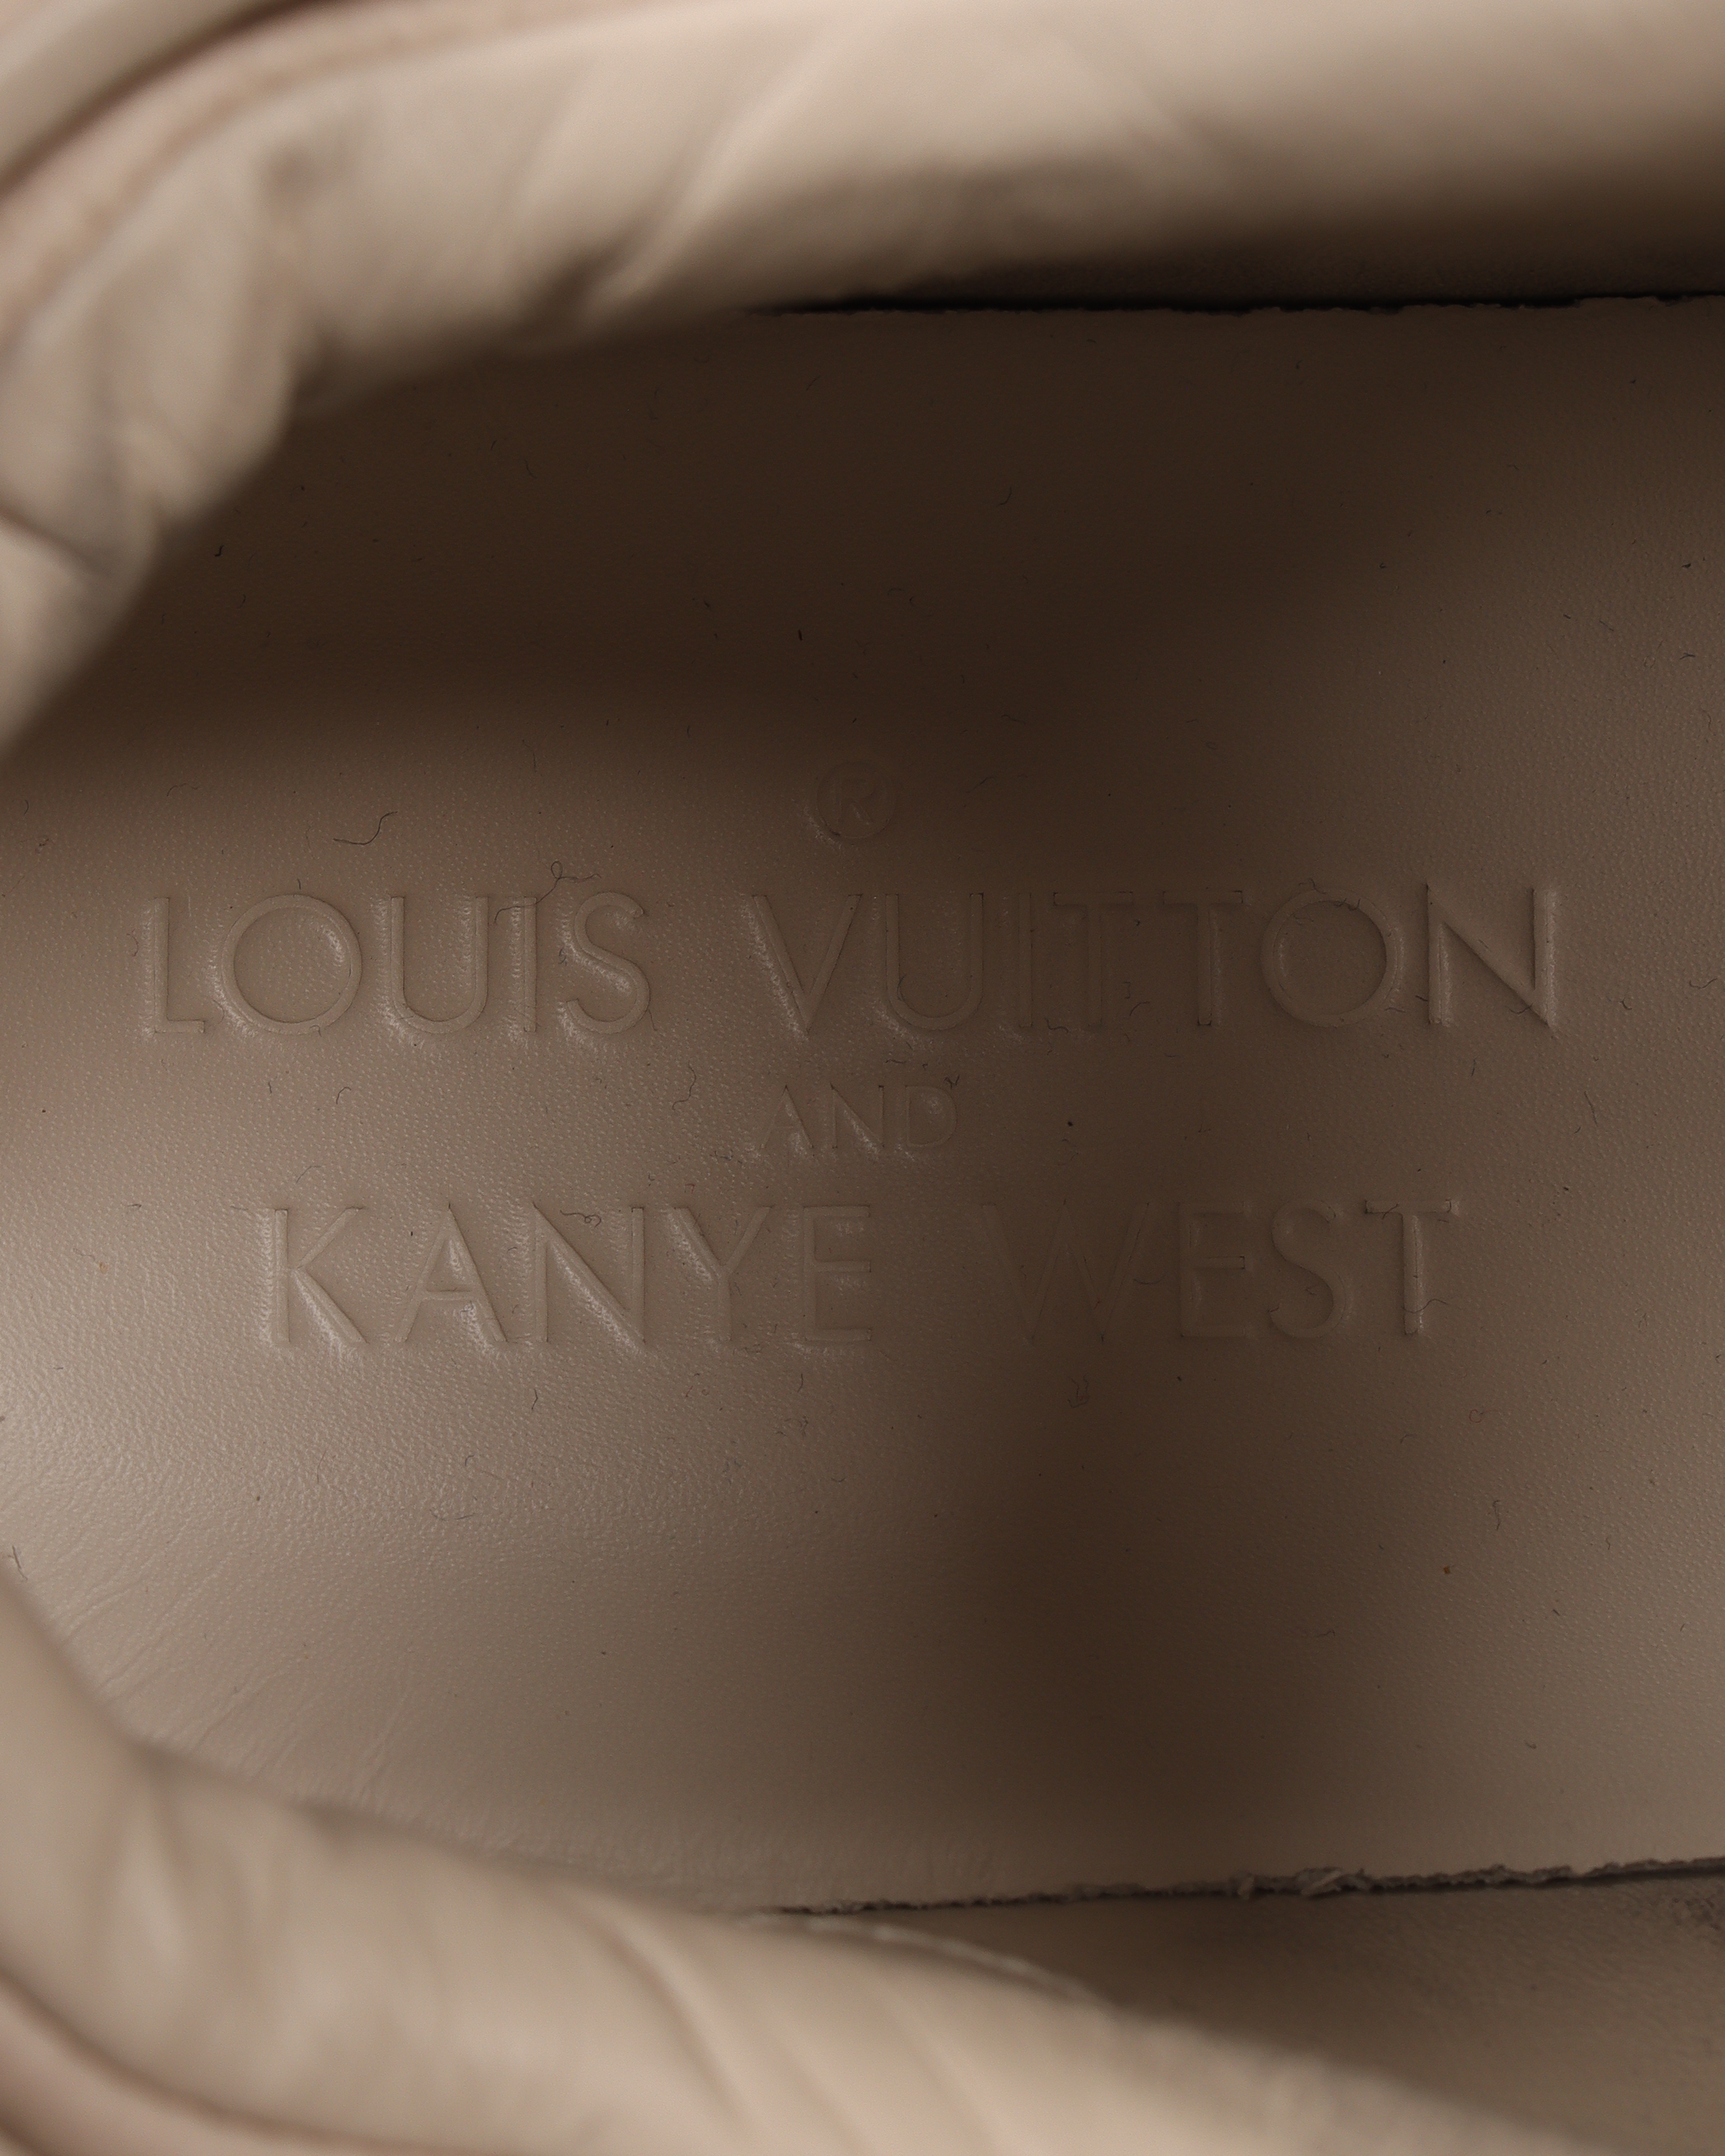 Kixclusive - Louis Vuitton x Kanye West Don Creme